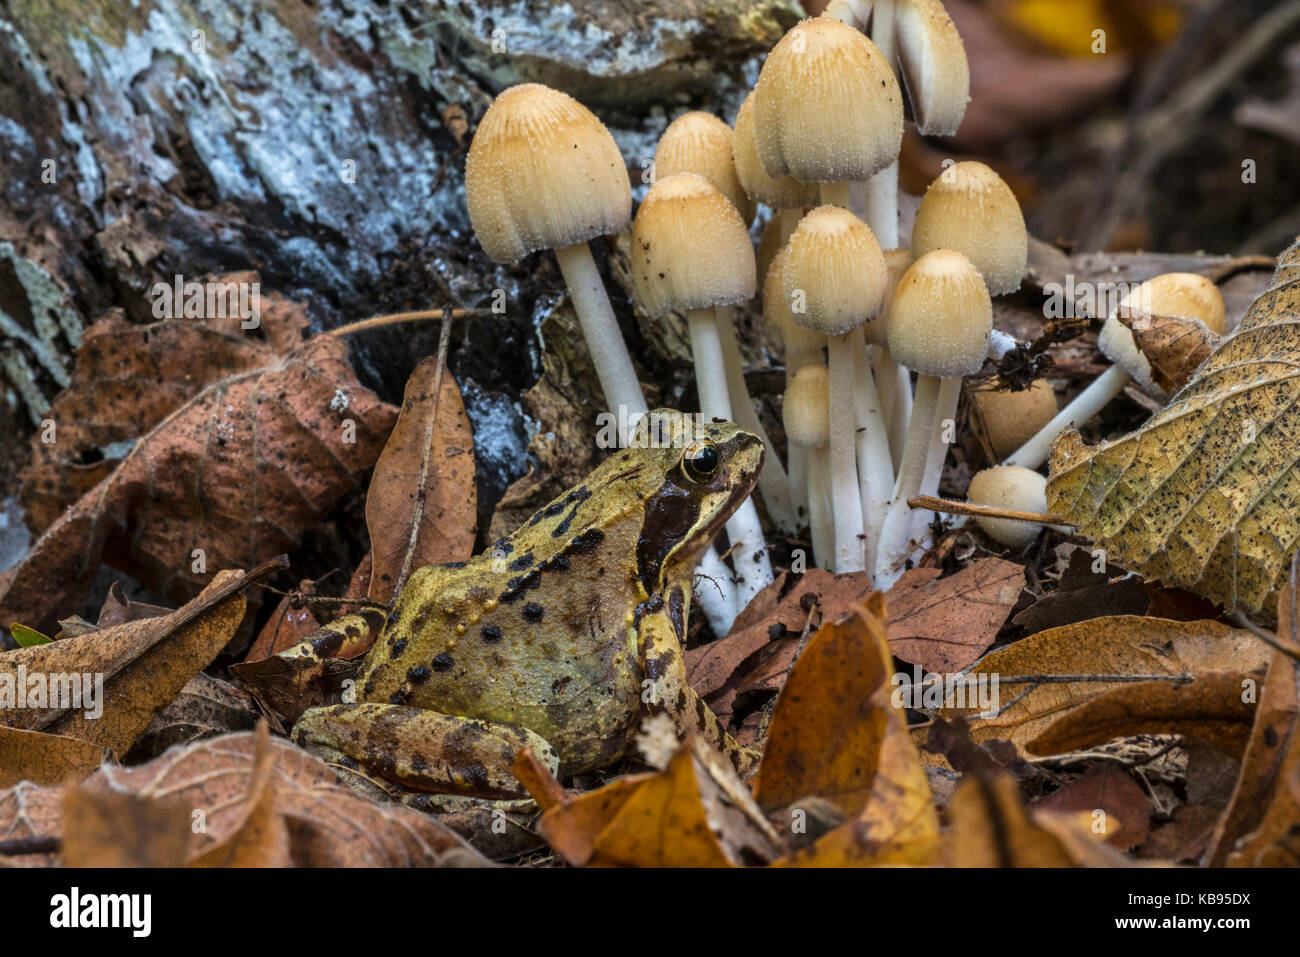 Grasfrosch (Rana temporaria) vor Glimmer cap/glitzernden inky cap Pilze (Coprinellus truncorum/Coprinus micaceus) im Herbst Wald Stockfoto